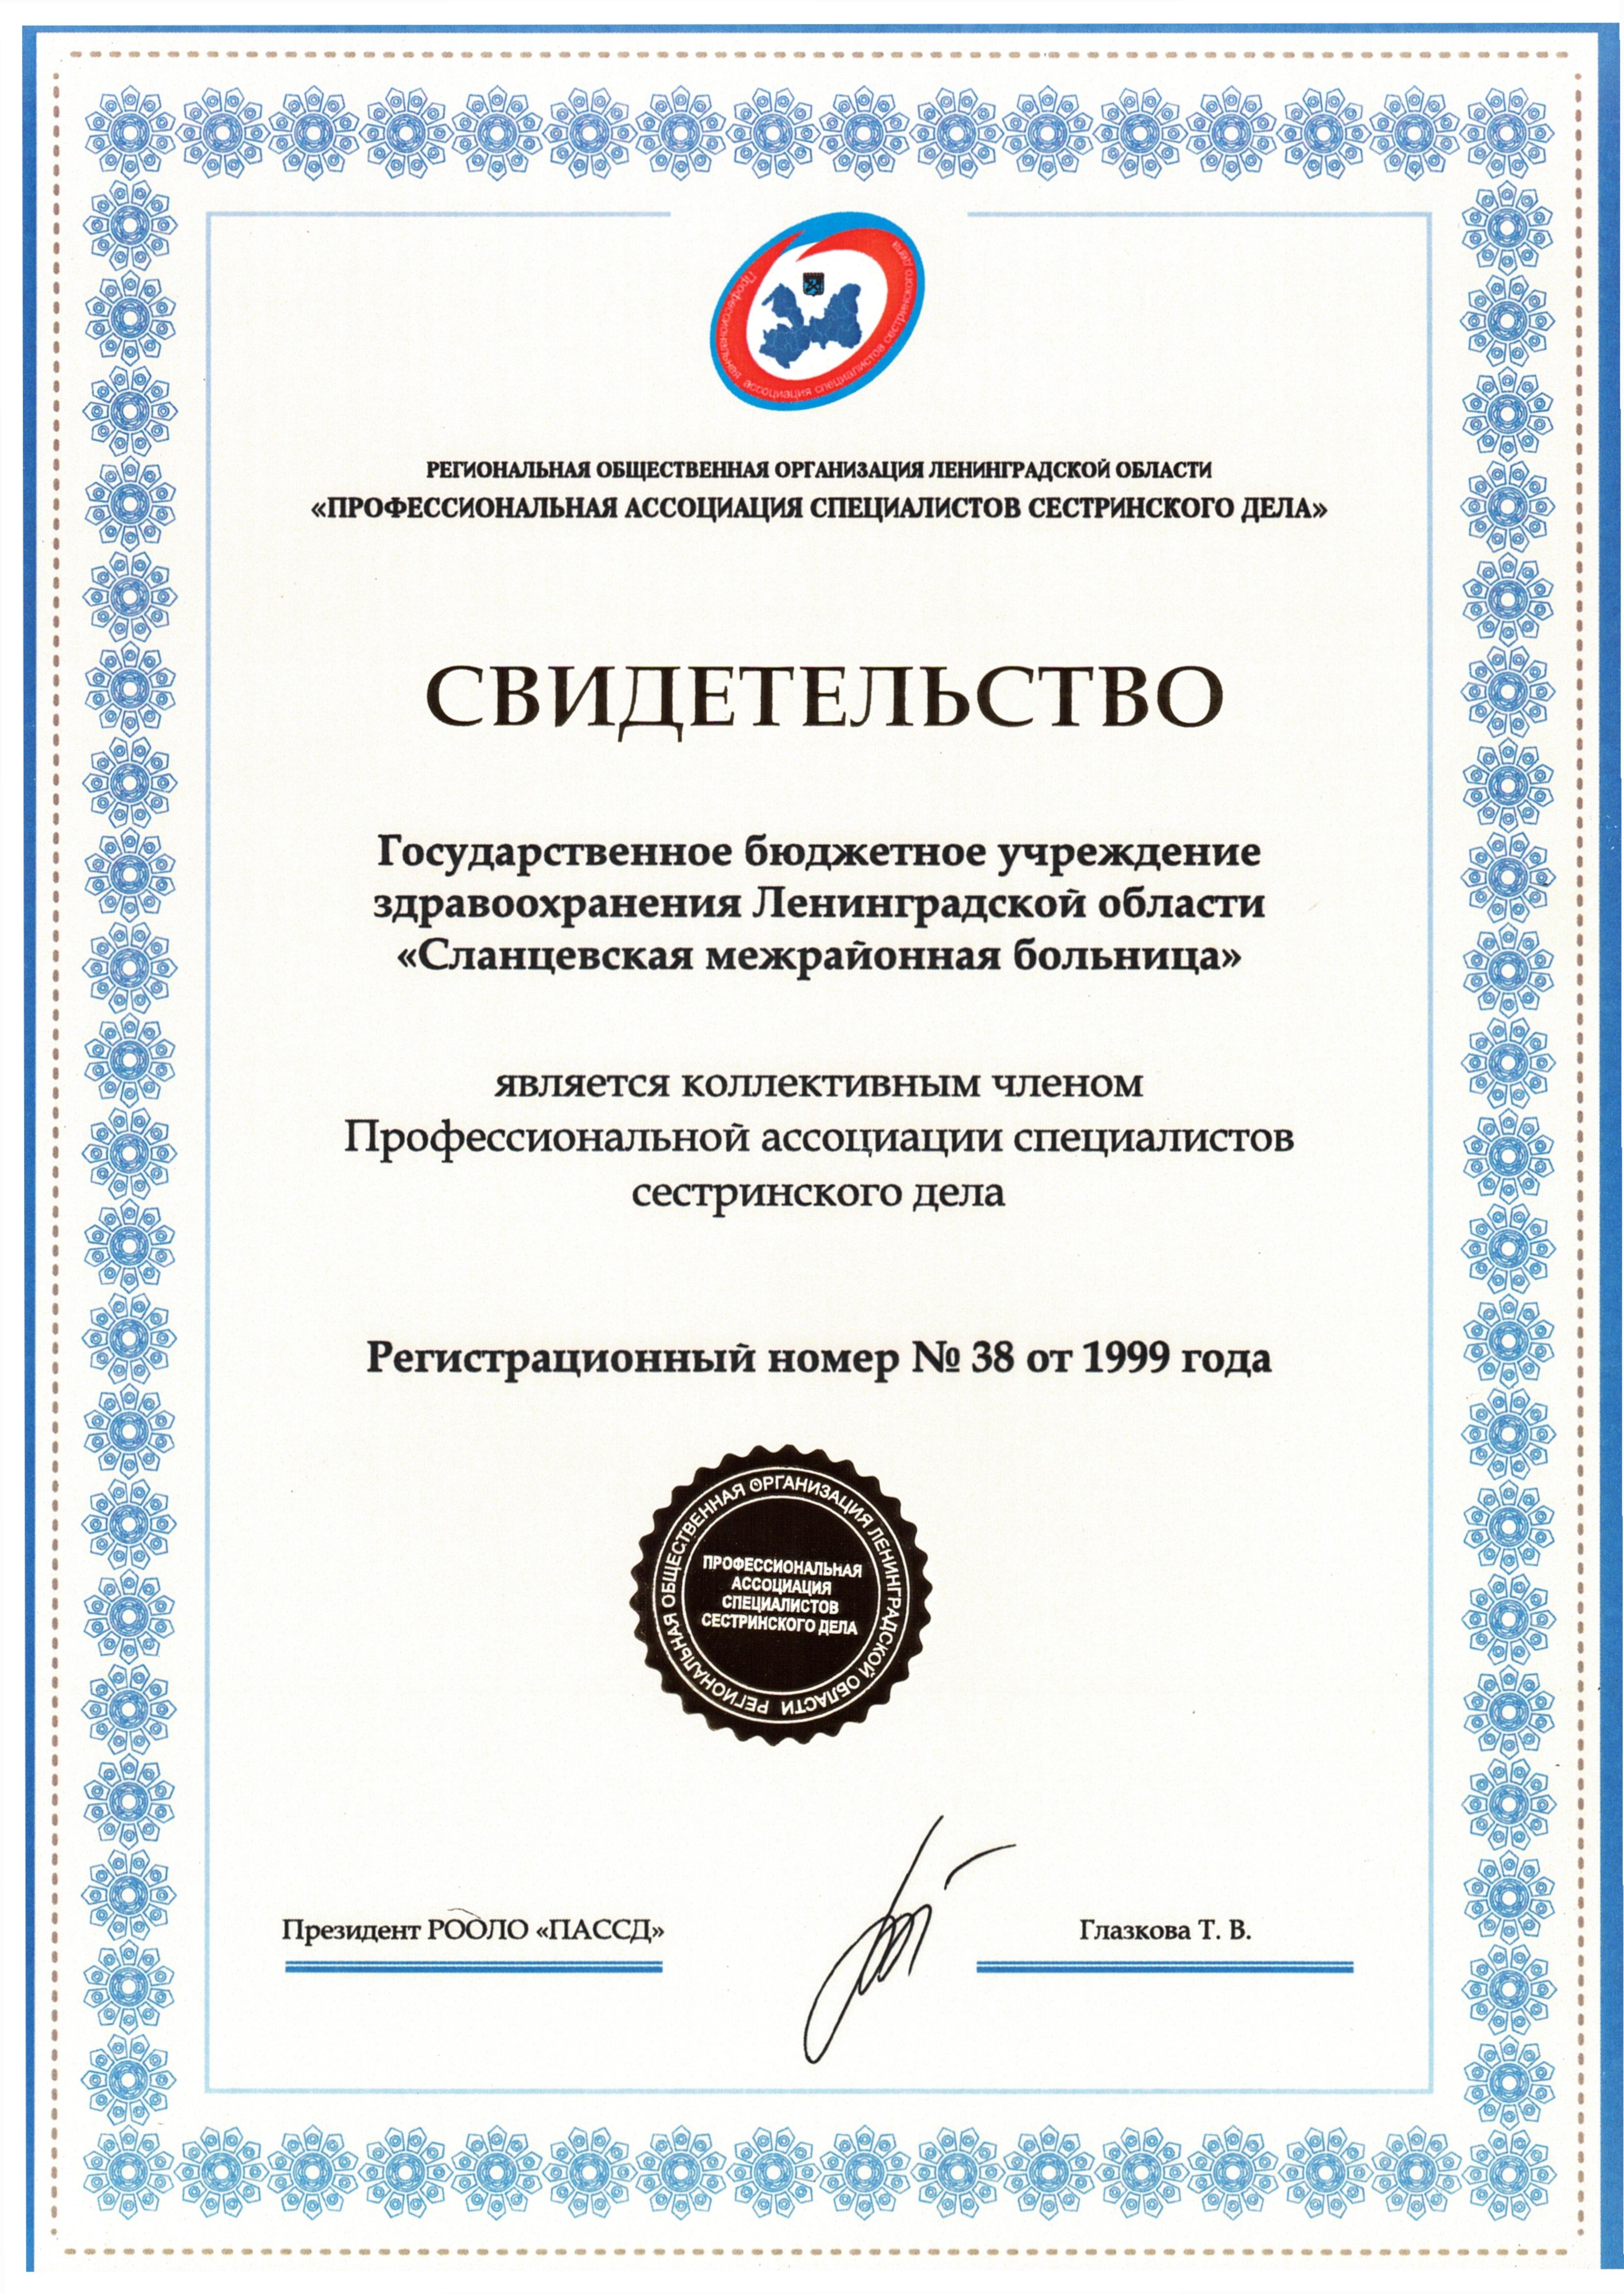 ГБУЗ ЛО "Сланцевская МБ": сертификат